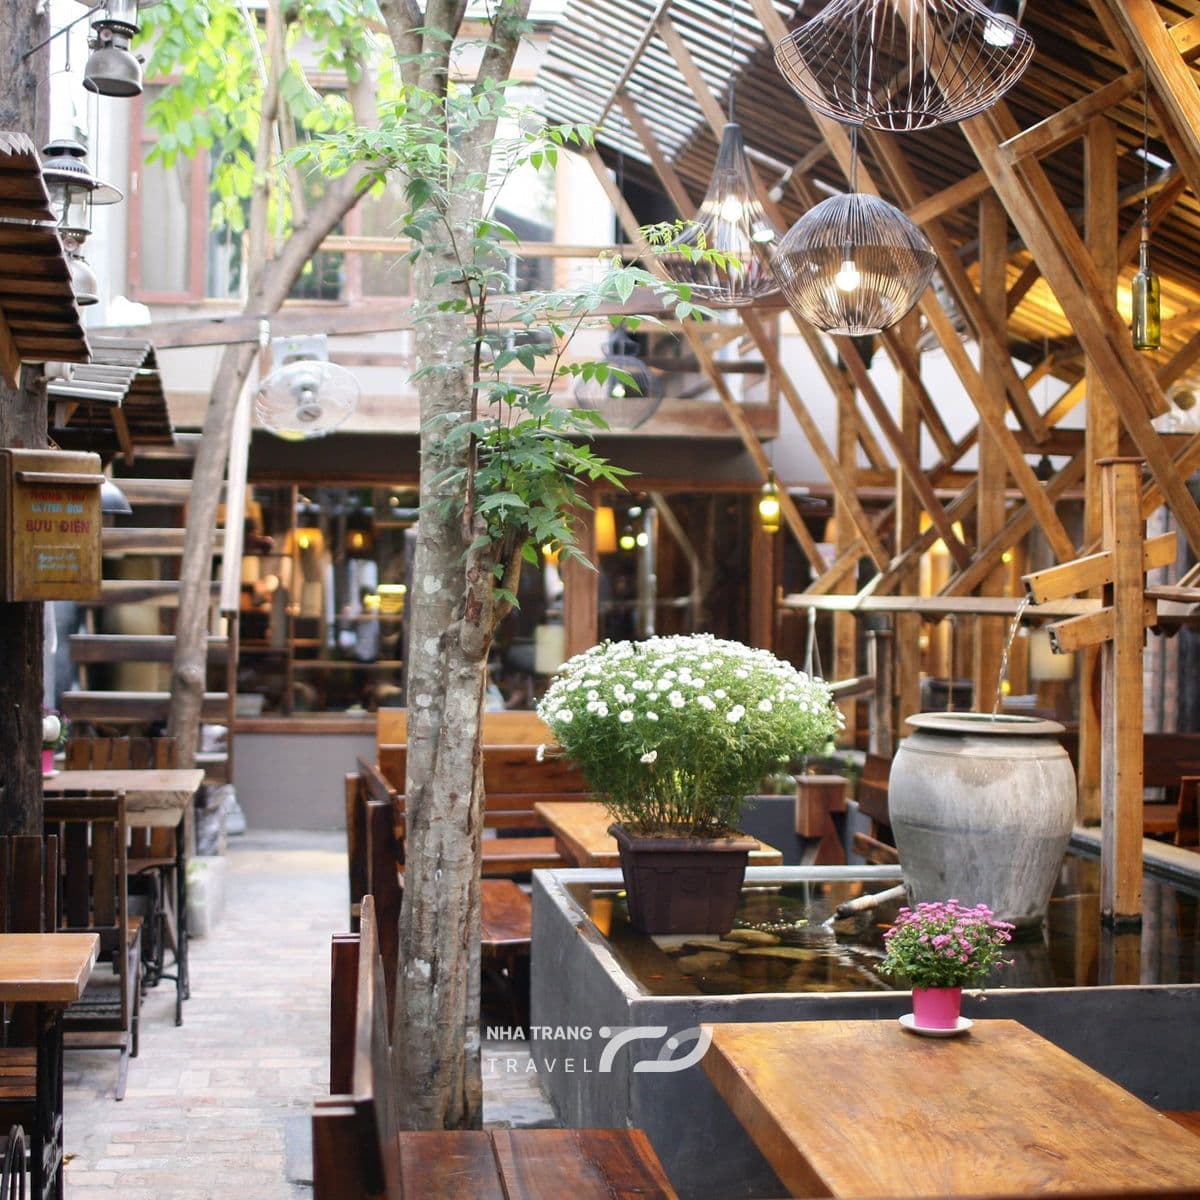 An Cafe Nha Trang